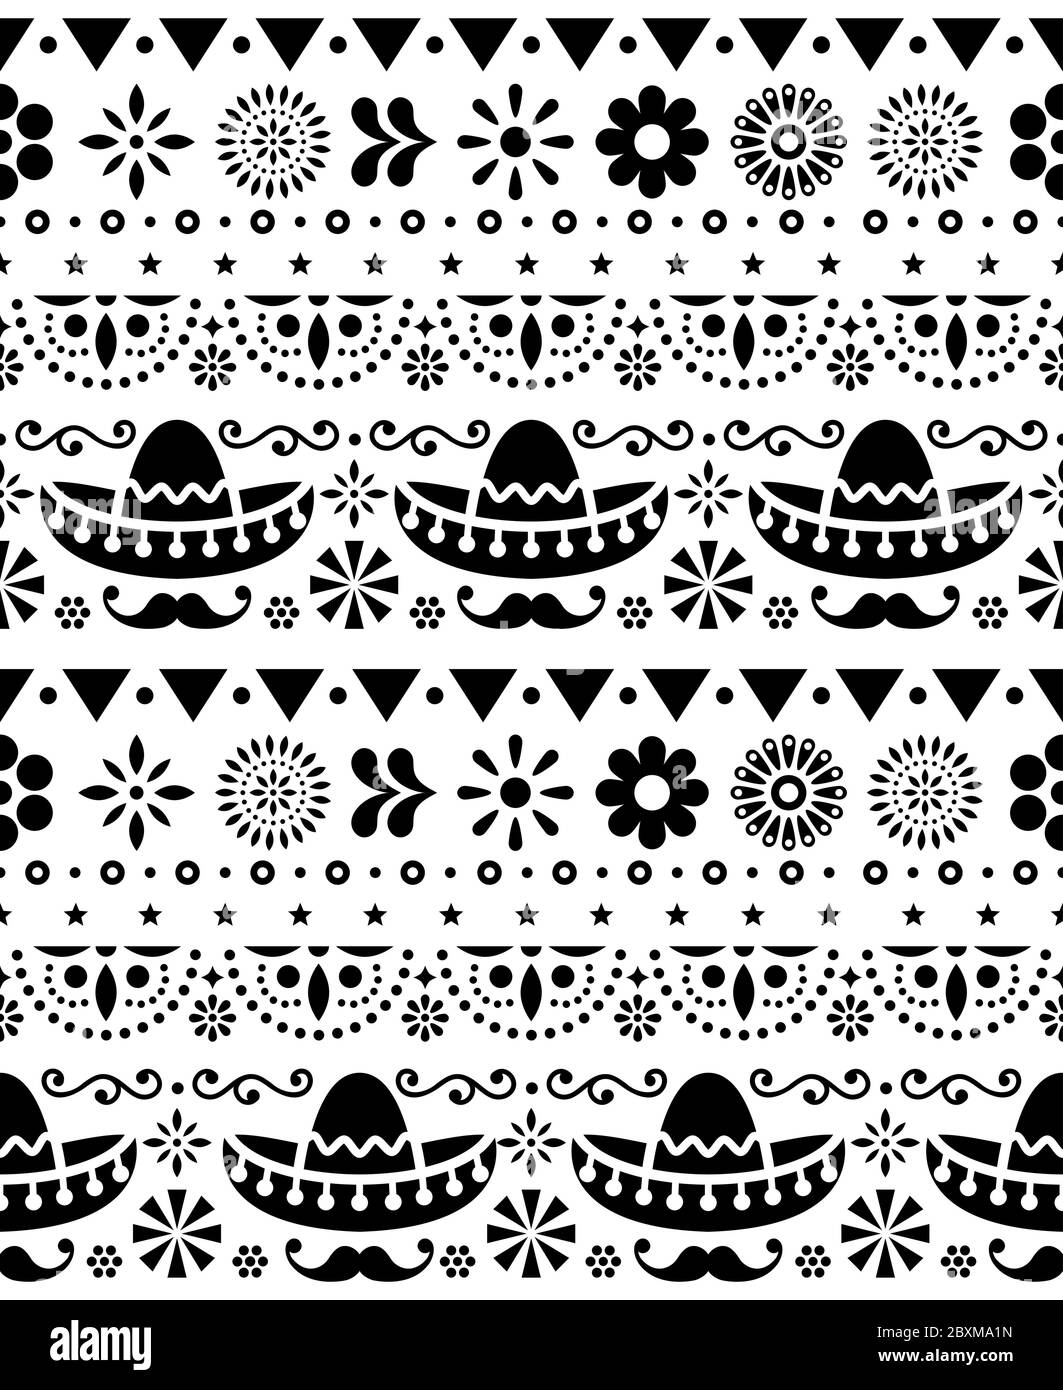 Mexican Hat - Sombrero und langen Schnurrbart nahtlose Vektor Blumenmuster - Textil, Tapeten Design Stock Vektor